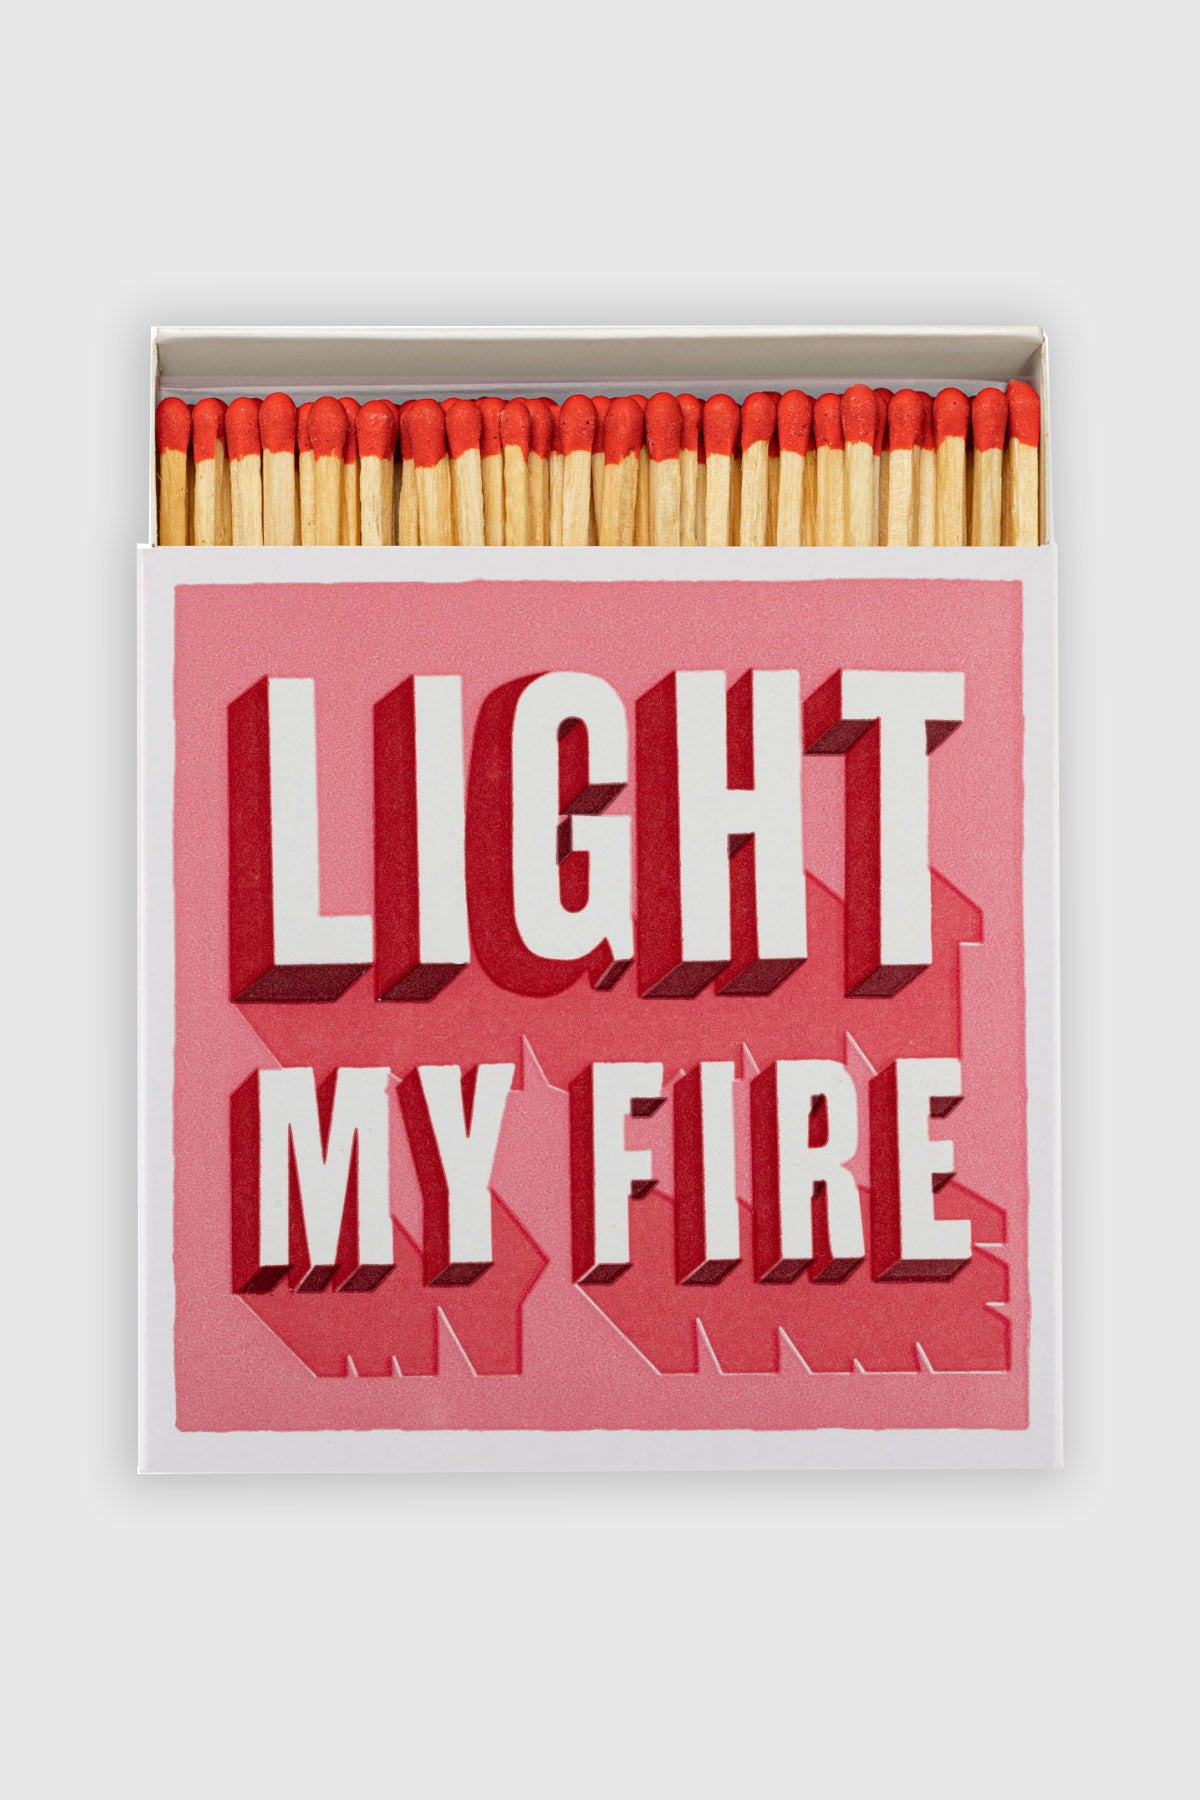 Matchbox "Light My Fire"